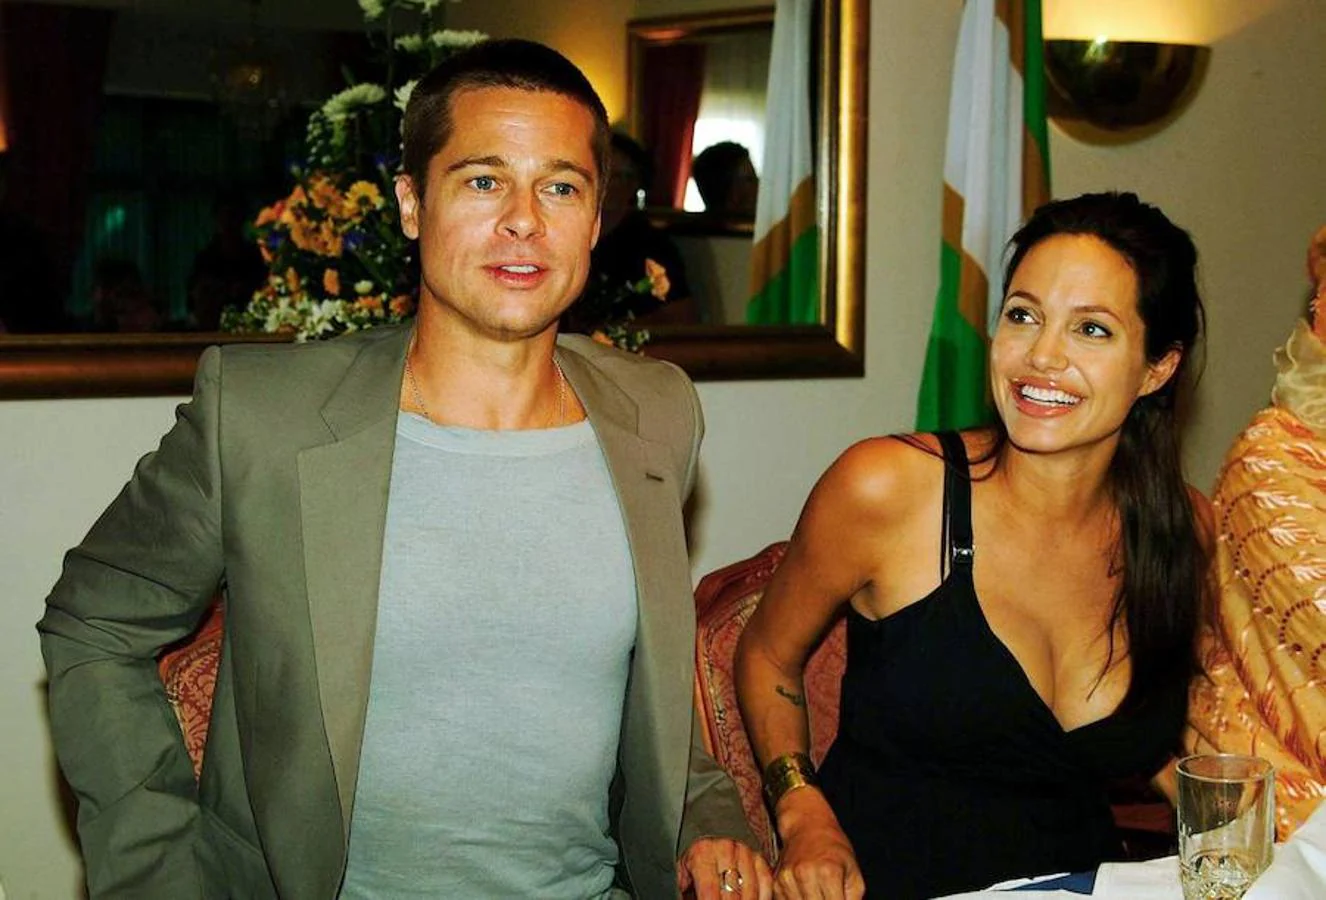 En el 2005, una serie de fotos confirmaban el nuevo romance hollywoodense: Brad Pitt y Angelina Jolie